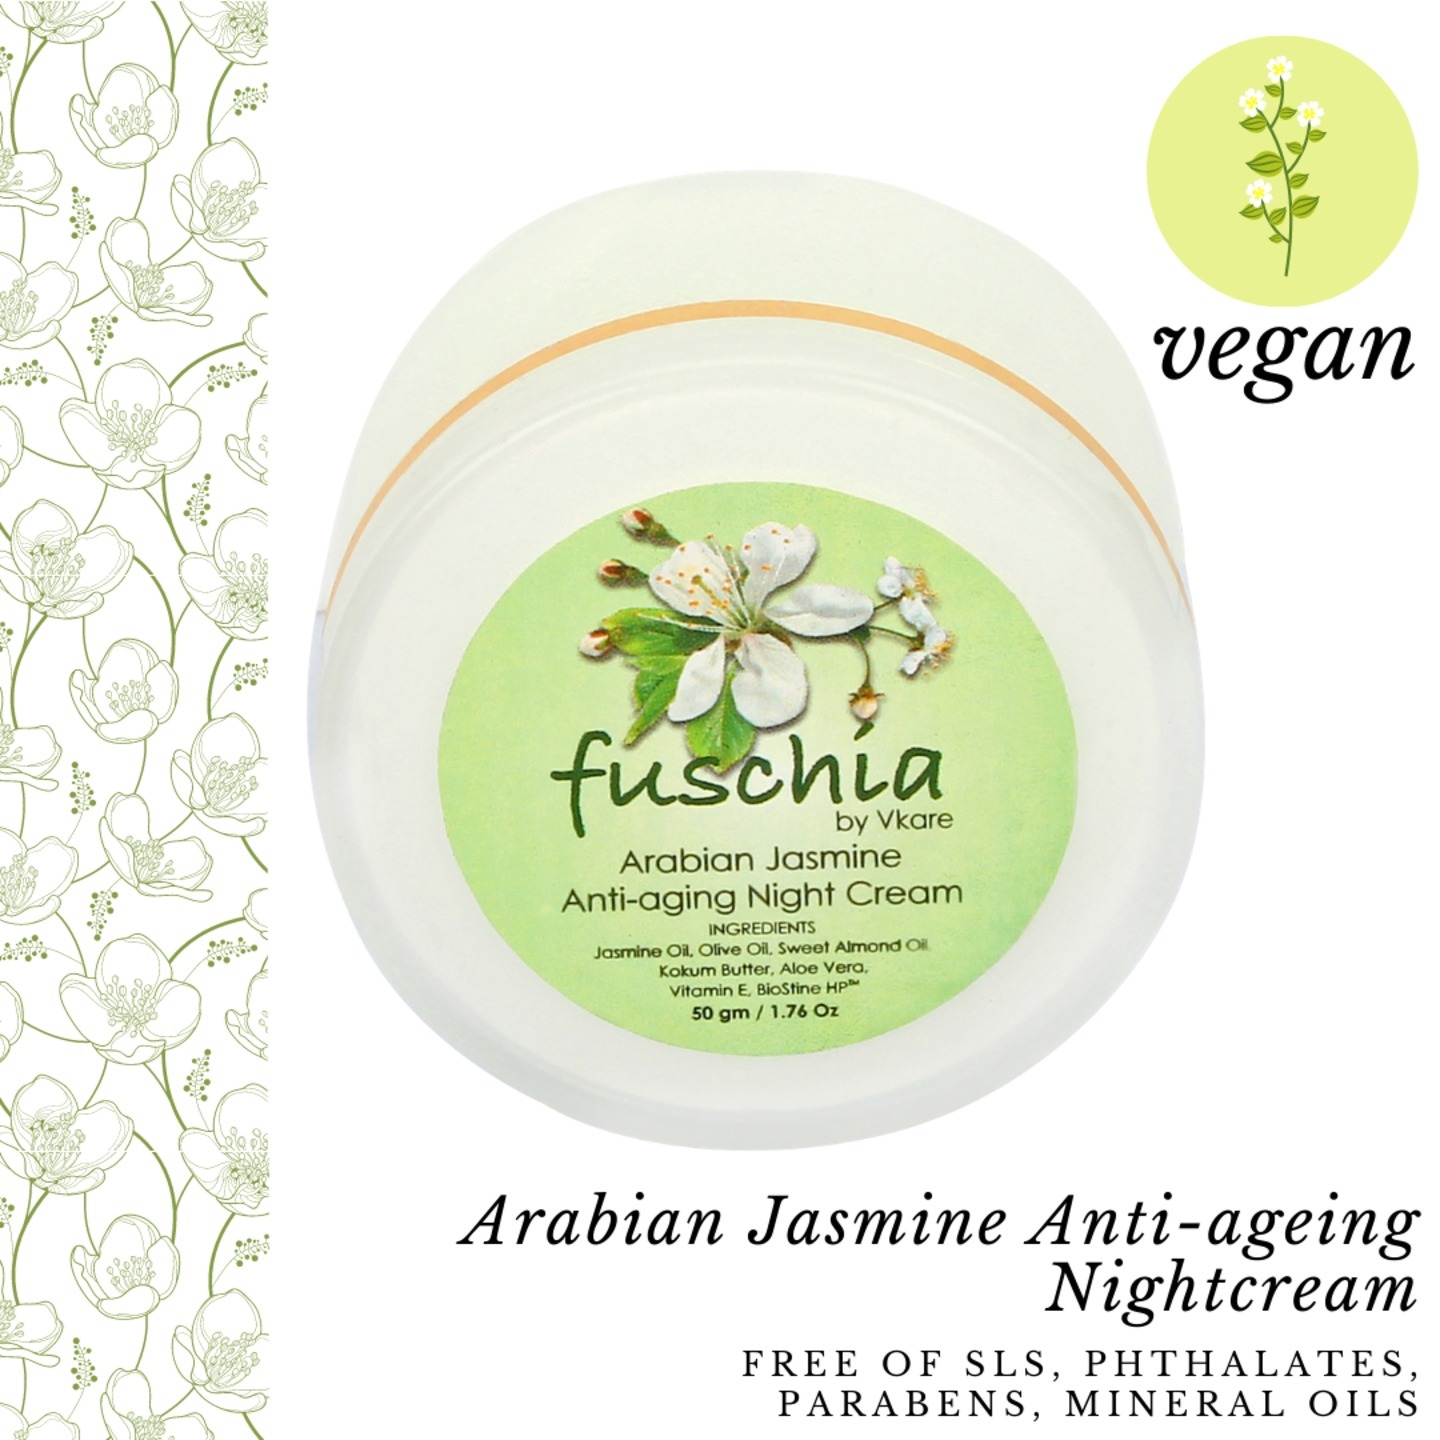 Fuschia - Arabian Jasmine  Anti-ageing  Night  Cream